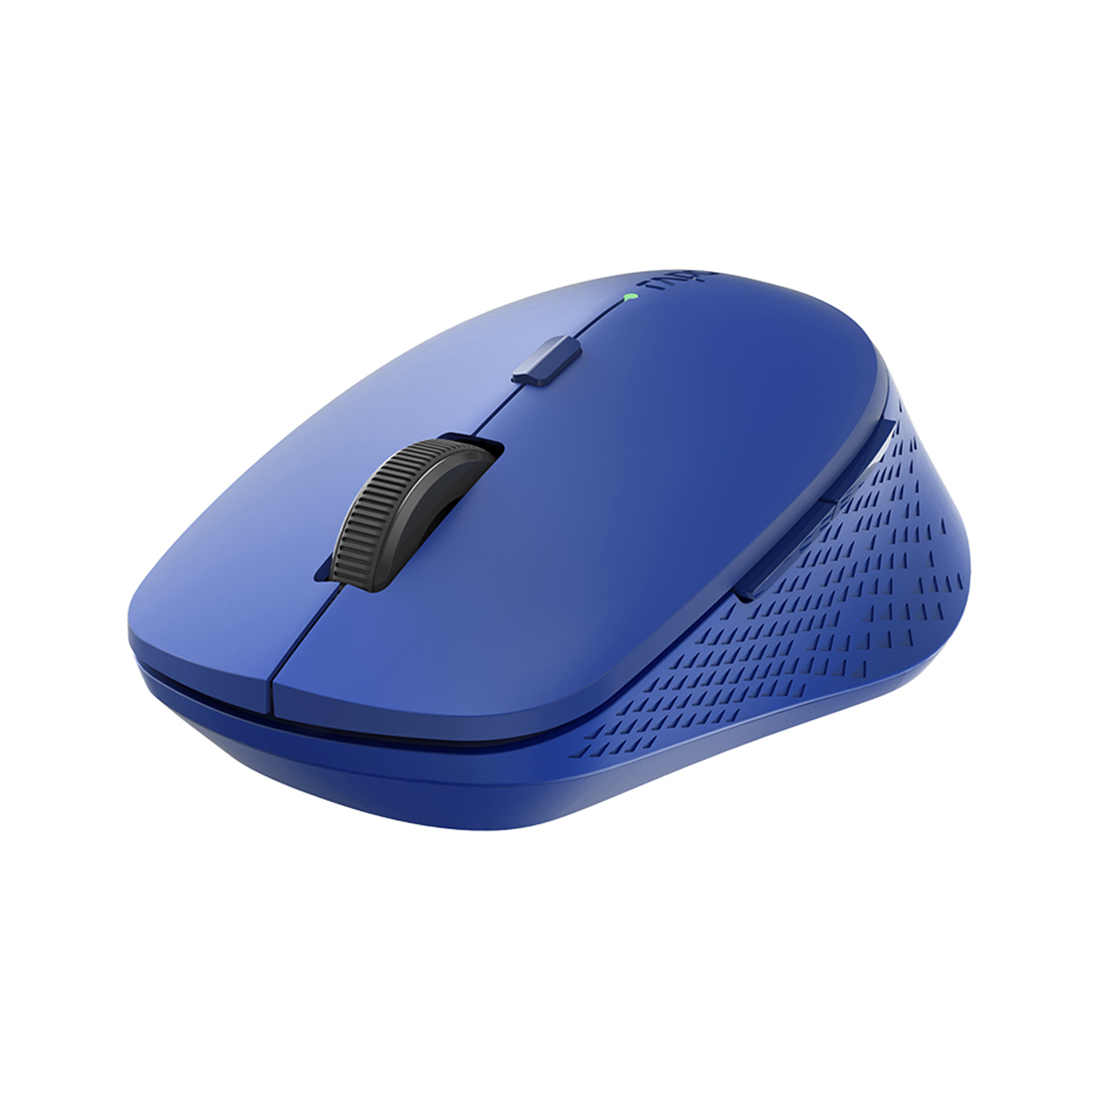 купить Компьютерная мышь Rapoo M300 Blue в Алматы